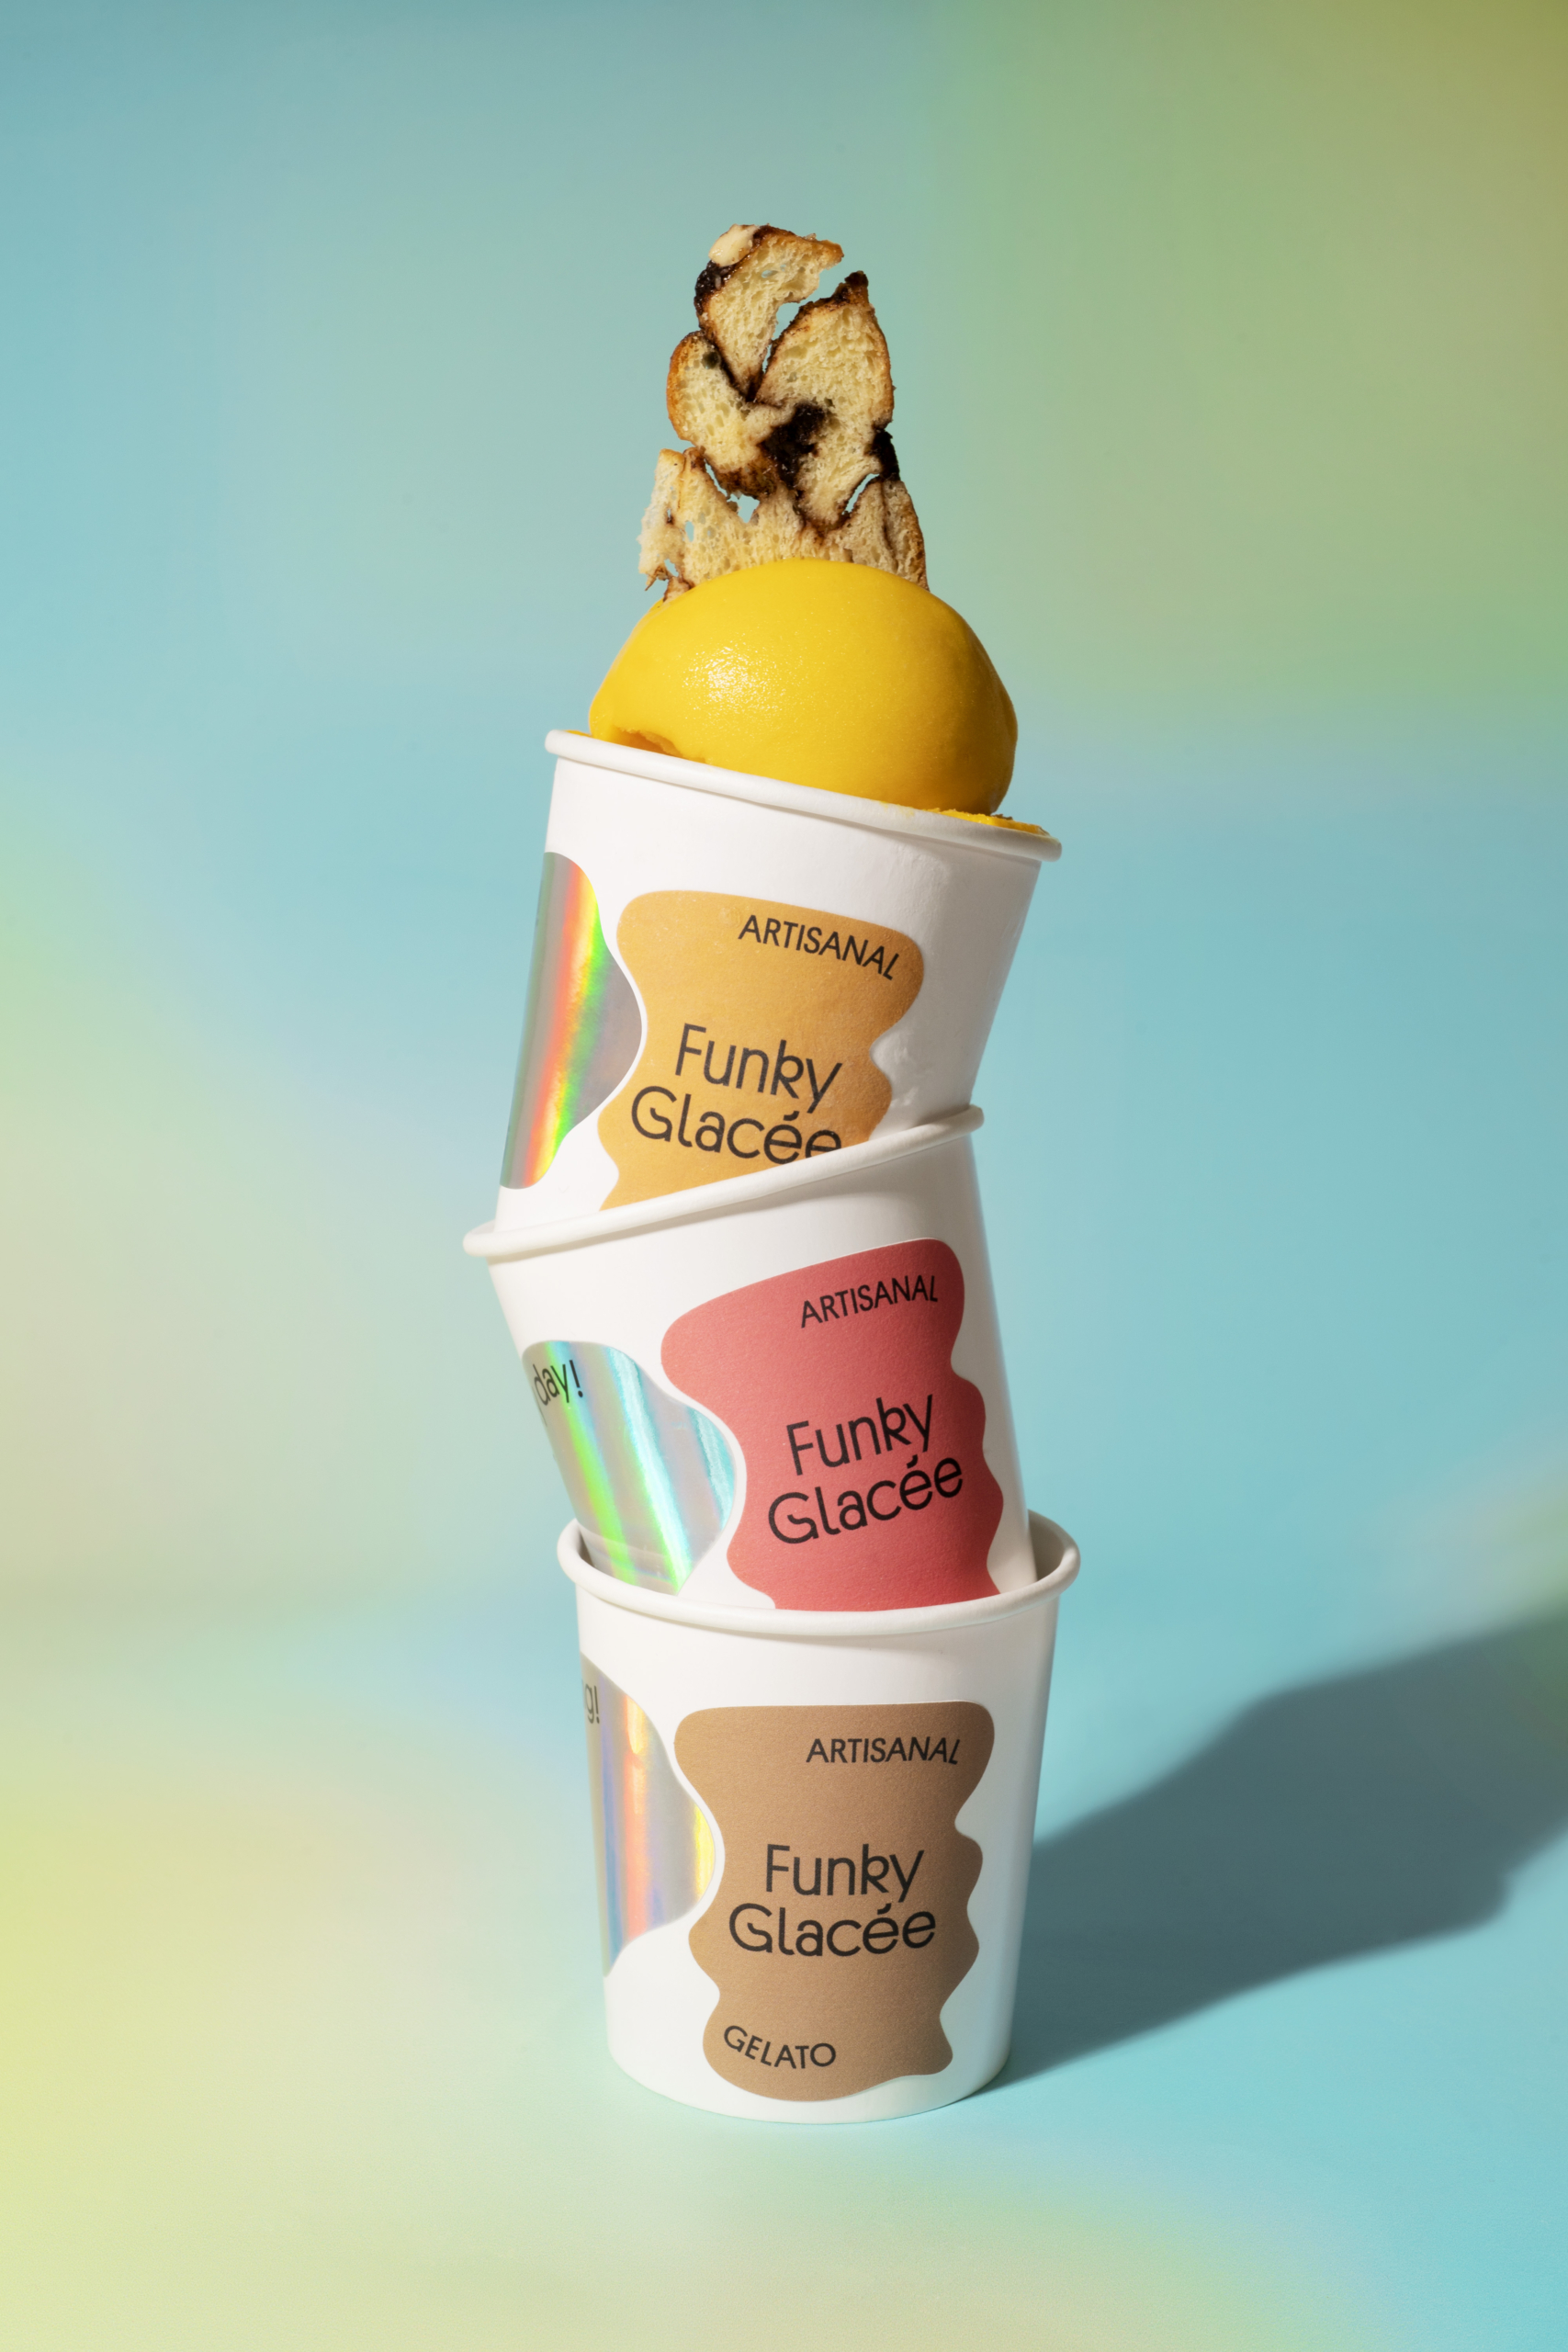 Funky Bakers lanza los Funky Glacée, su propia línea de gelatos artesanales